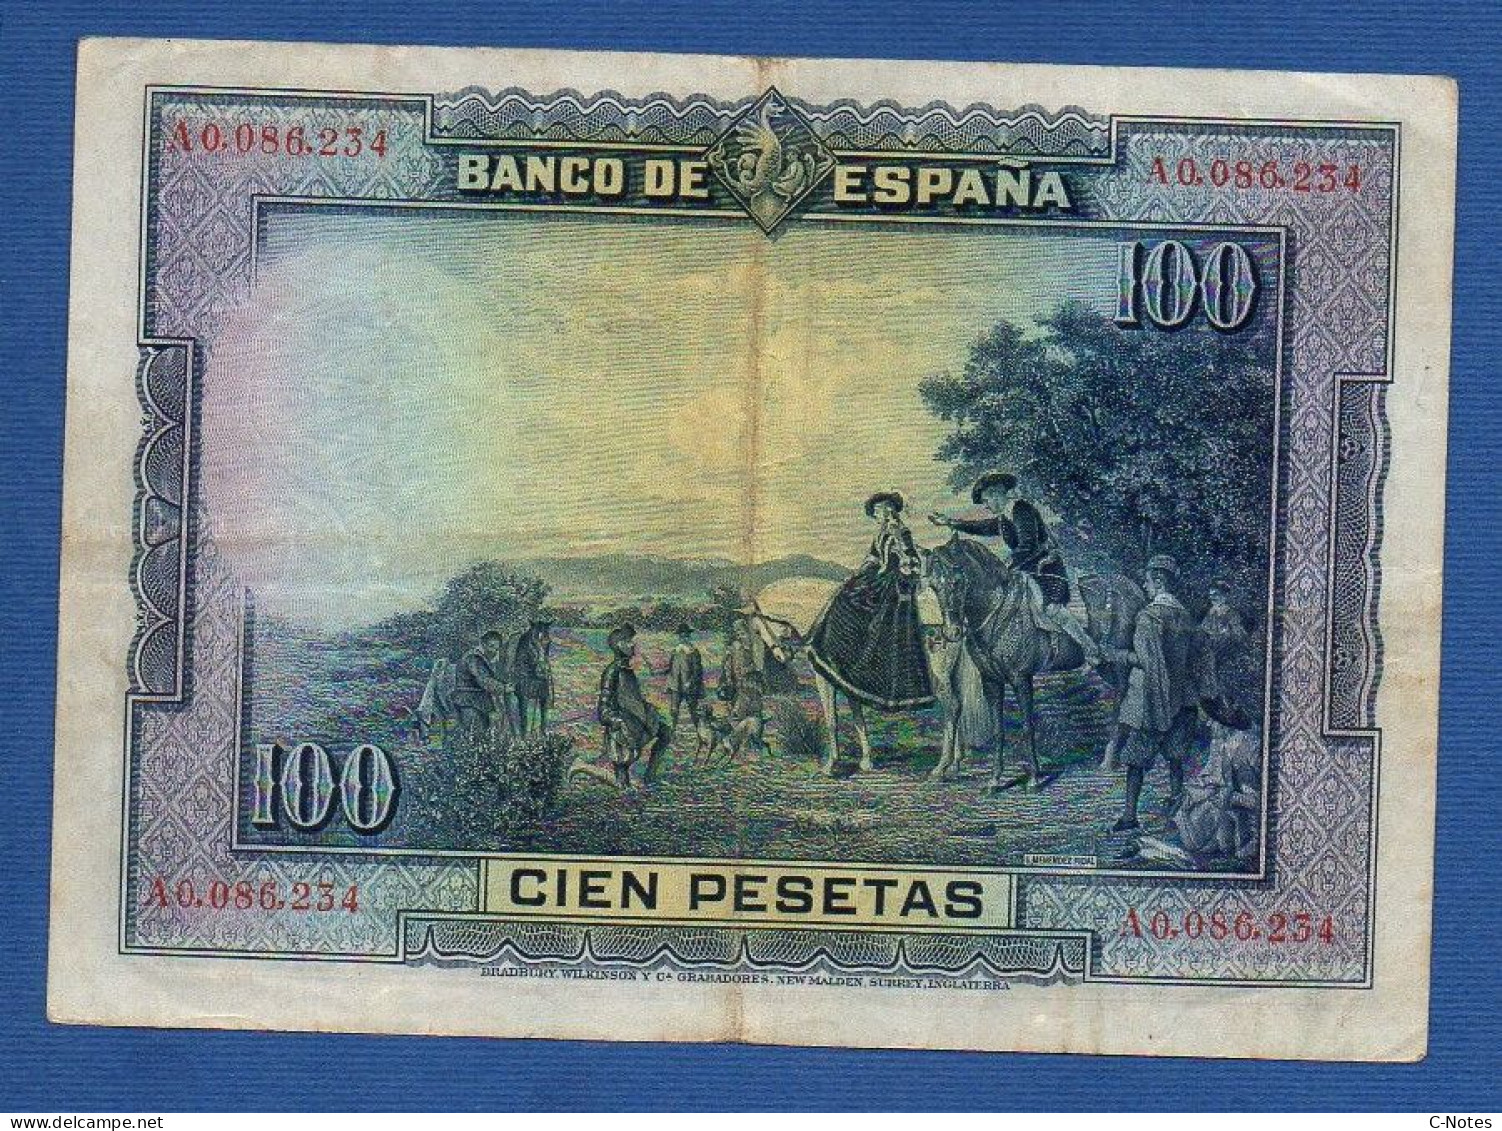 SPAIN - P. 76a – 100 Pesetas 1928 VF, S/n A0,086,234 - 100 Pesetas